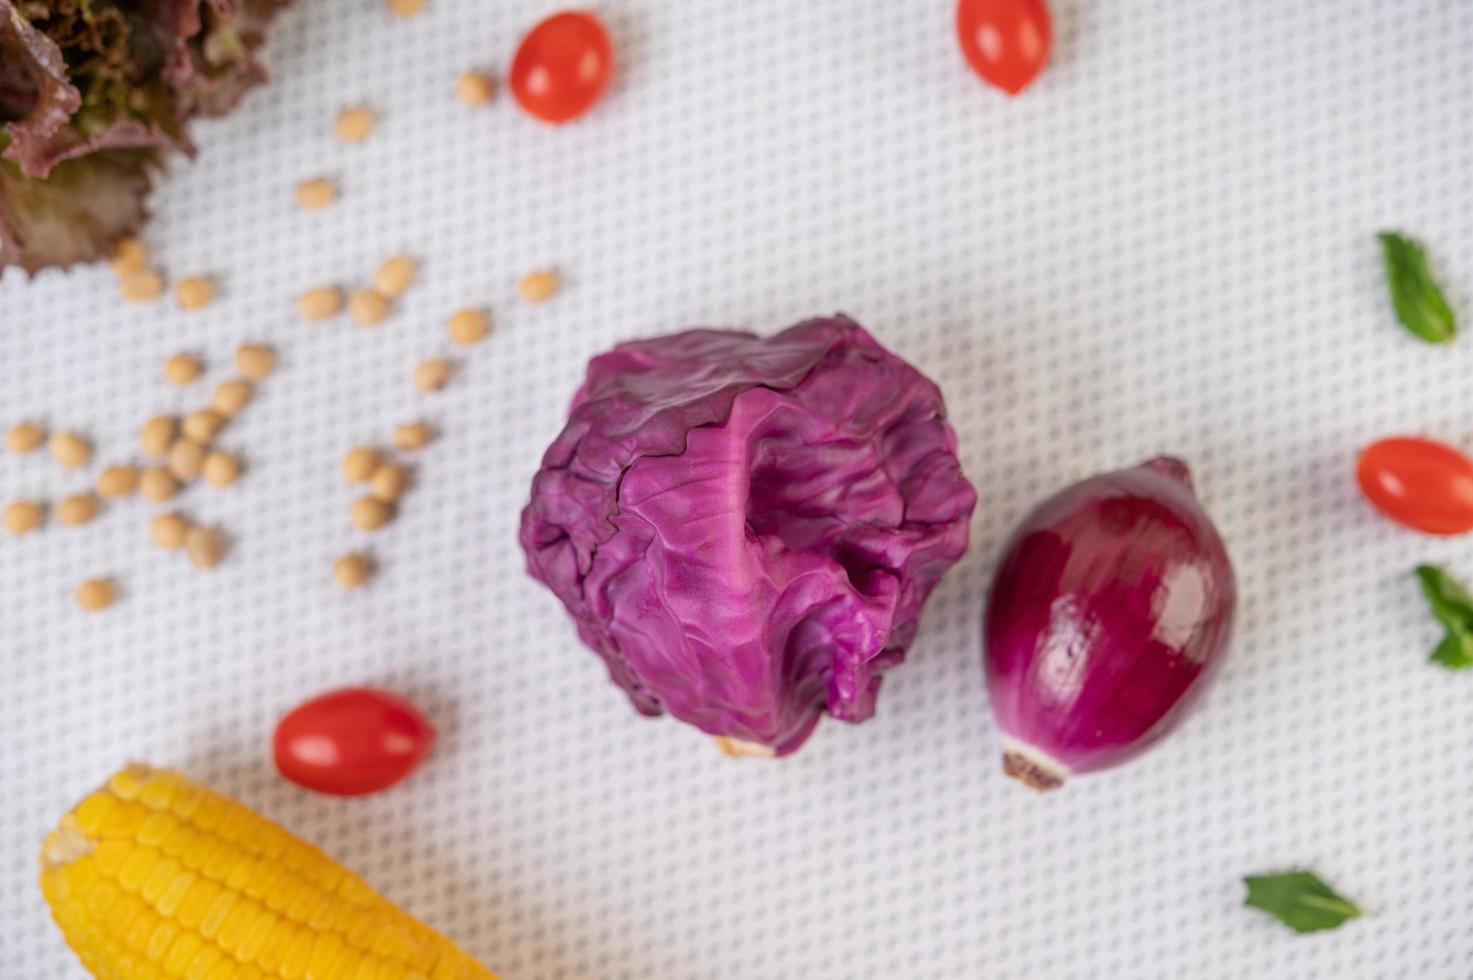 cavolo viola, pomodori, mais e cipolla rossa foto